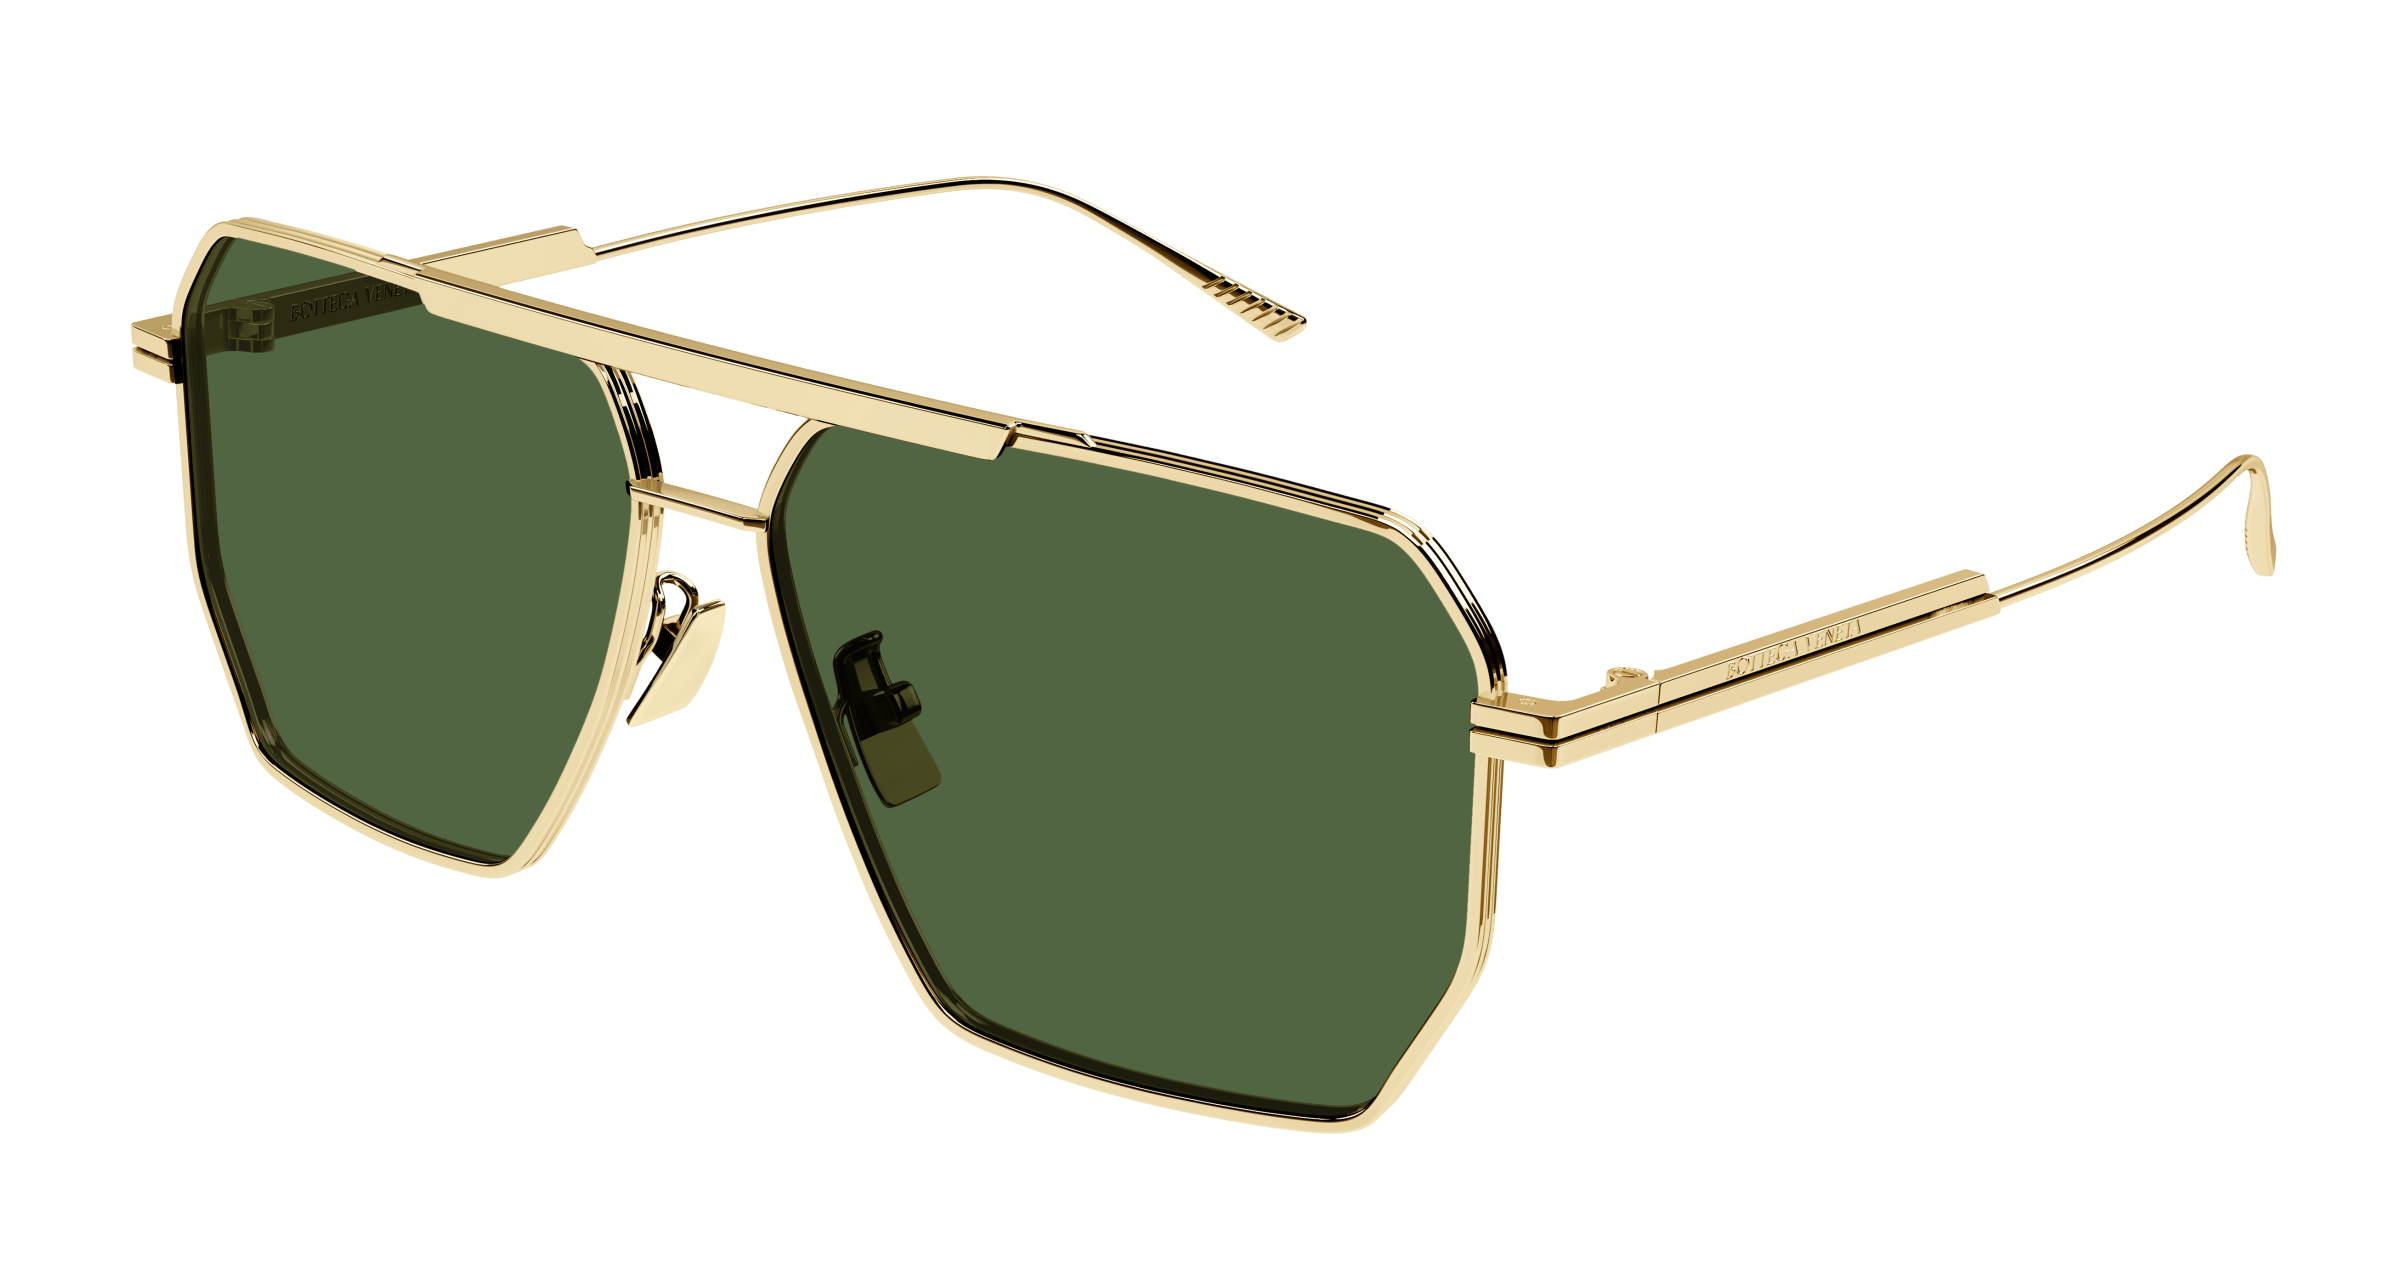 Мужские зеленые очки солнцезащитные. Очки Bottega Veneta BV 1012s. Bottega Veneta bv1012s-004 60 очки солнцезащитные. Очки Bottega Veneta мужские. Солнечные очки Bottega bv1127s.